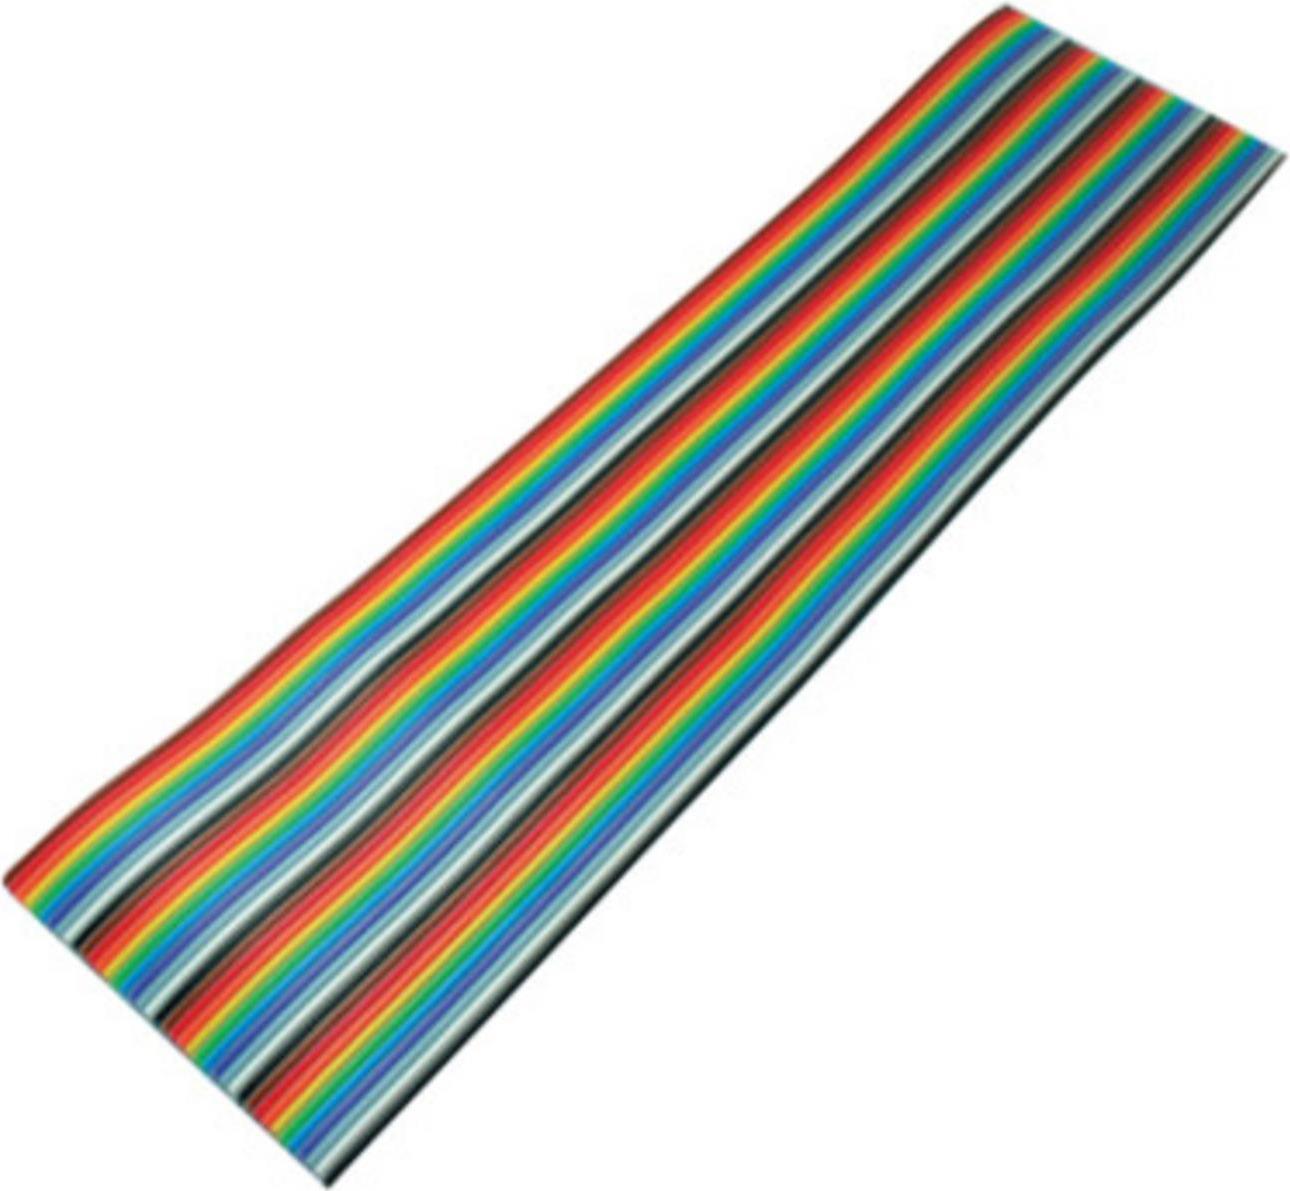 S-CONN S/CONN maximum connectivity Flachkabel, farbig Raster 1,27 mm, 40 pin, 3,0m (79072-3)